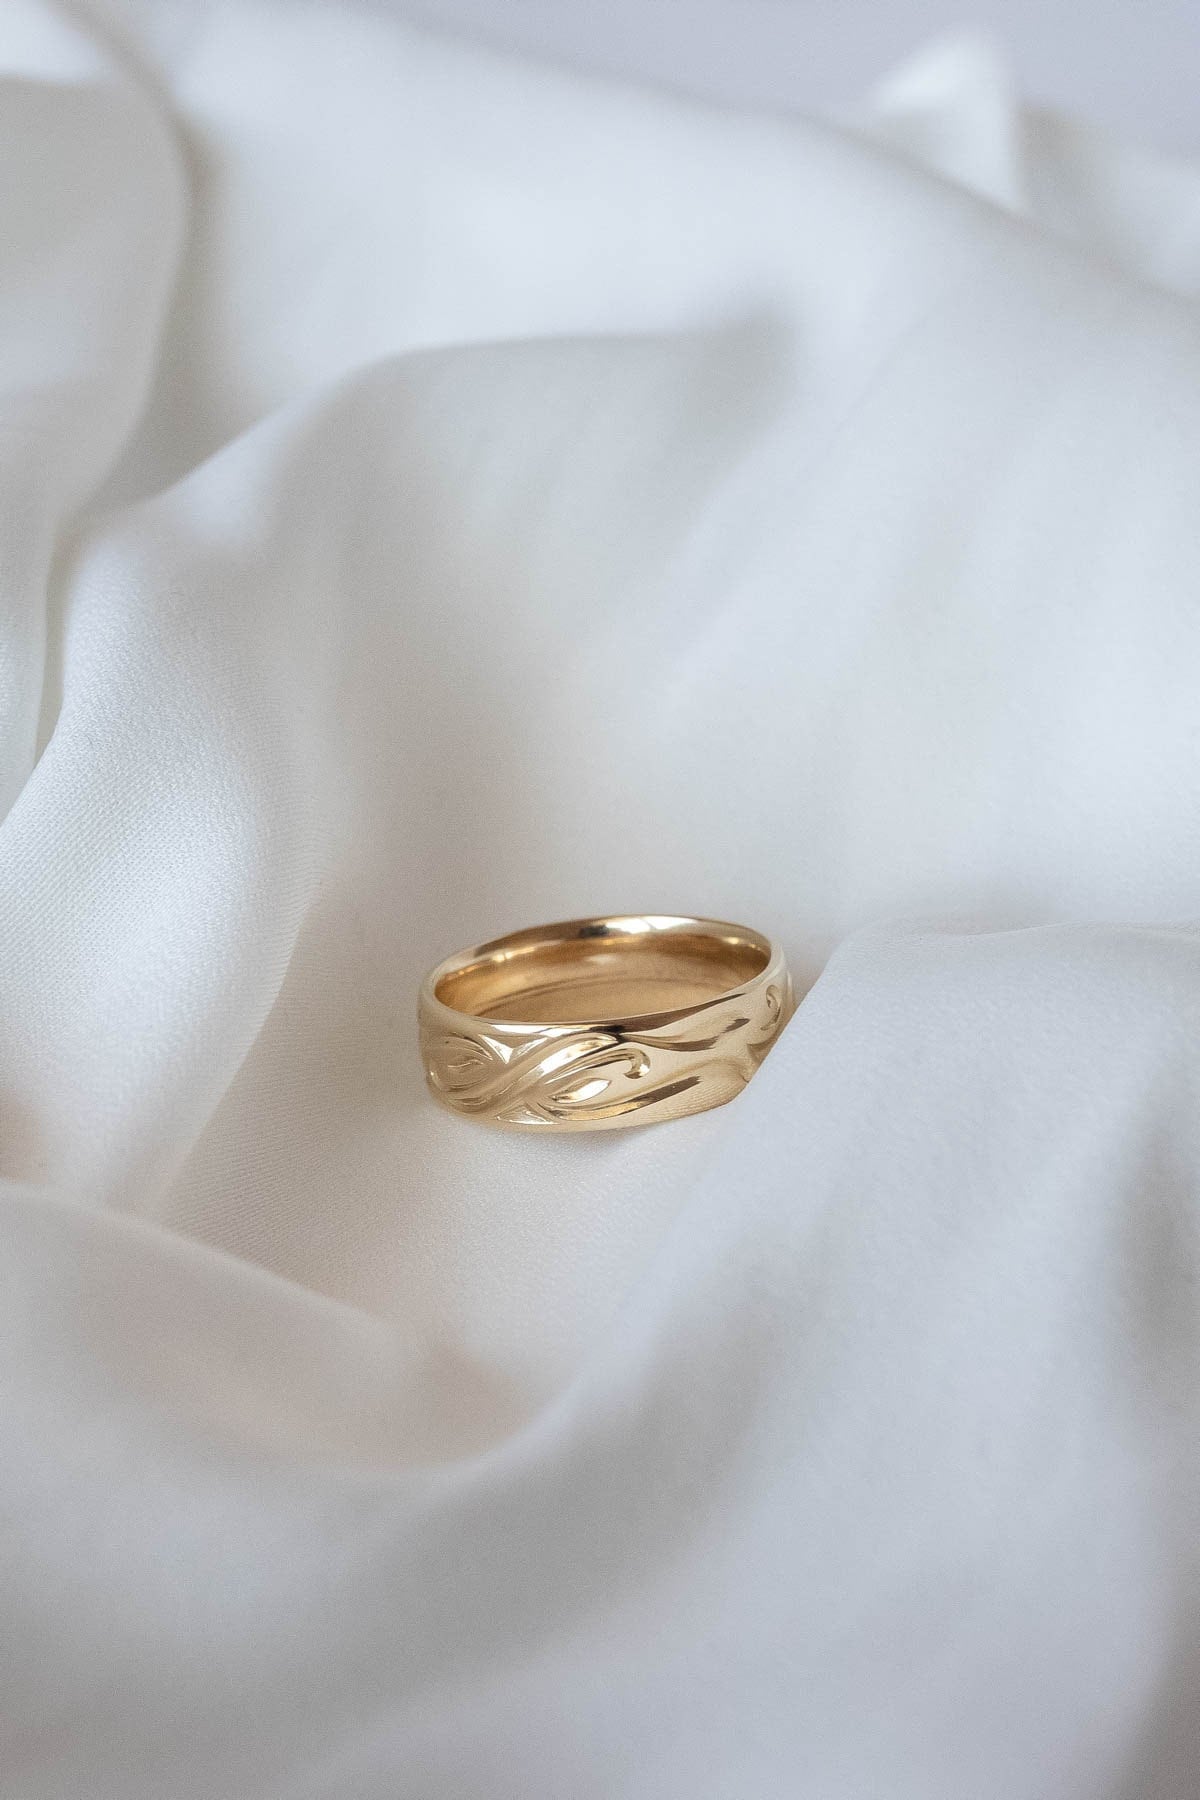 Infinity Symbol Ring, Herren Love 6mm Ehering Für Ihn, 14K Oder 18K Solid Gold Comfort Fit Ring von EdenGardenJewelry